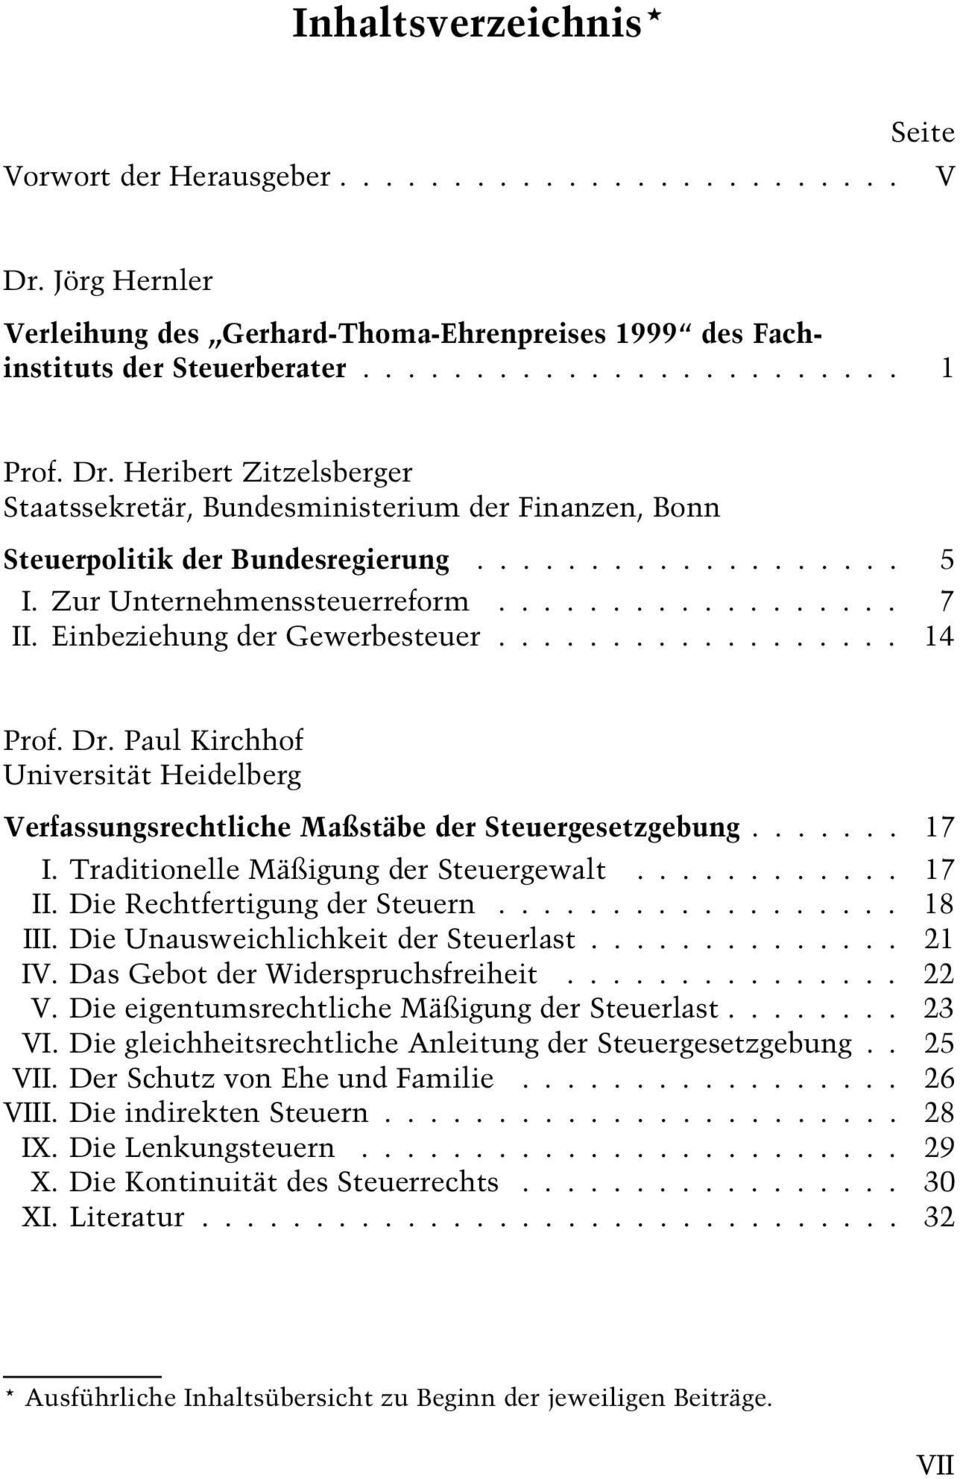 Paul Kirchhof Universität HeidelbergInhaltsverzeichnis Verfassungsrechtliche Maßstäbe der Steuergesetzgebung....... 17 I. Traditionelle Mäßigung der Steuergewalt............ 17 II.